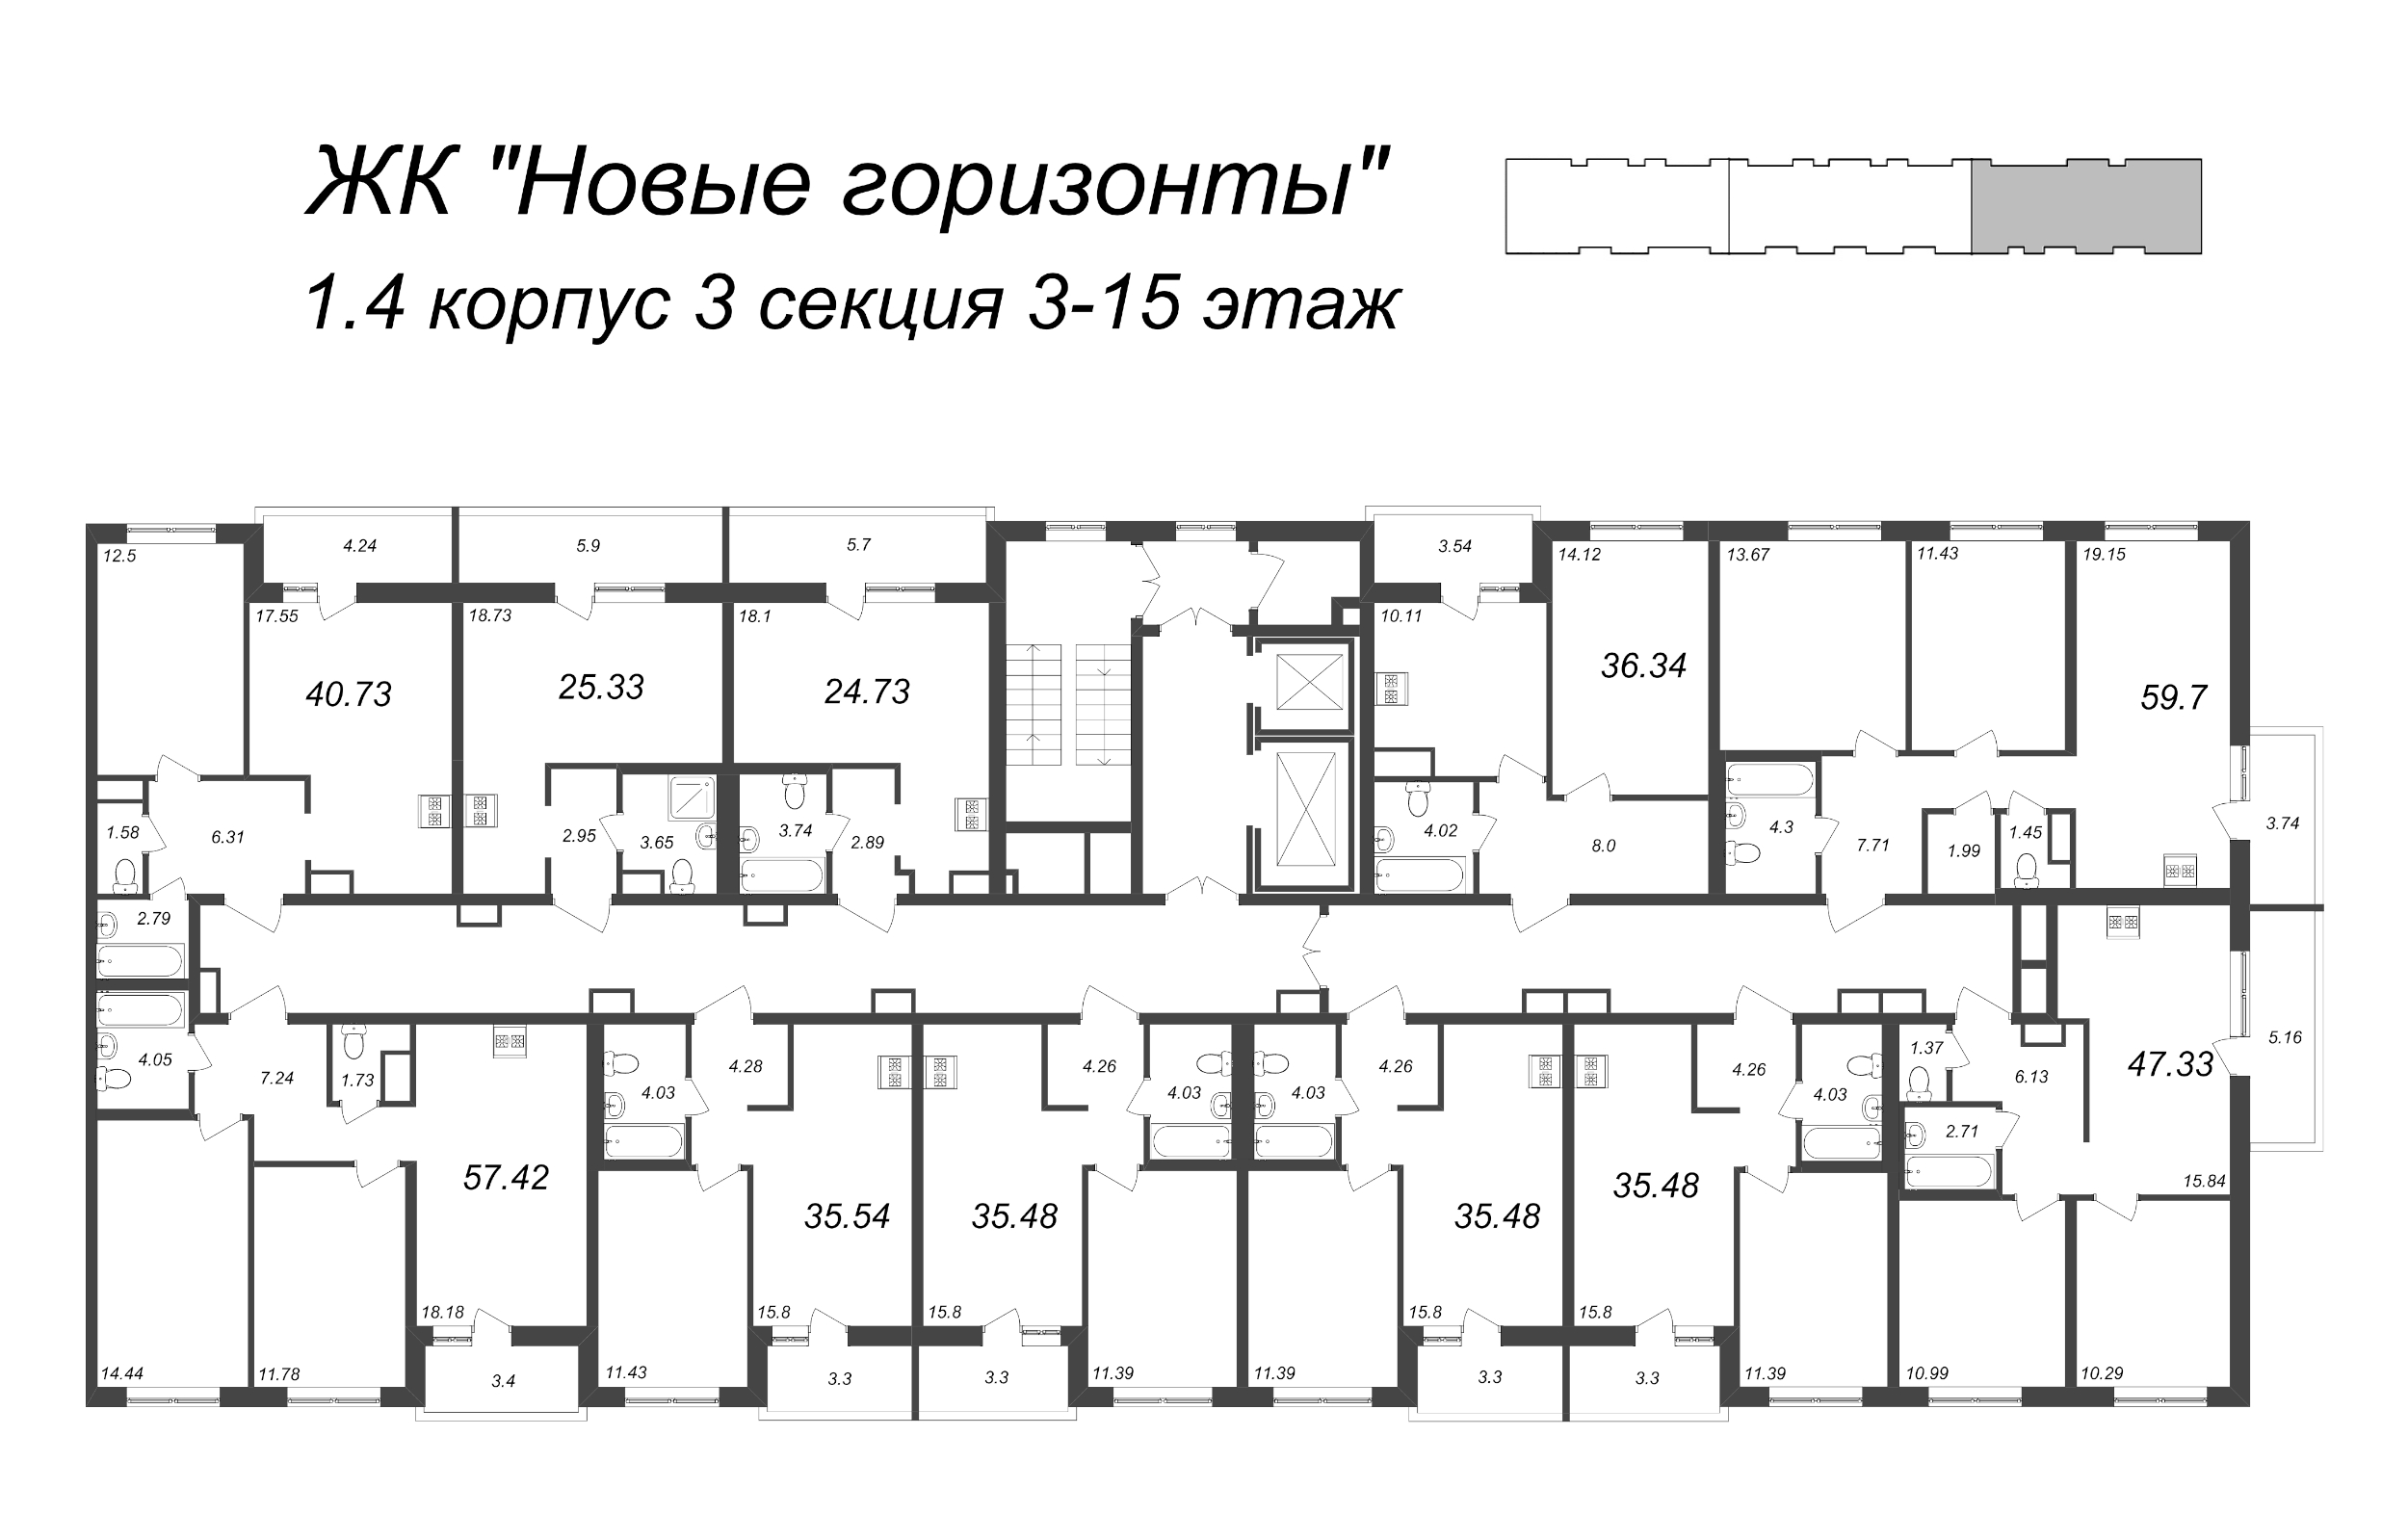 Квартира-студия, 25.33 м² в ЖК "Новые горизонты" - планировка этажа